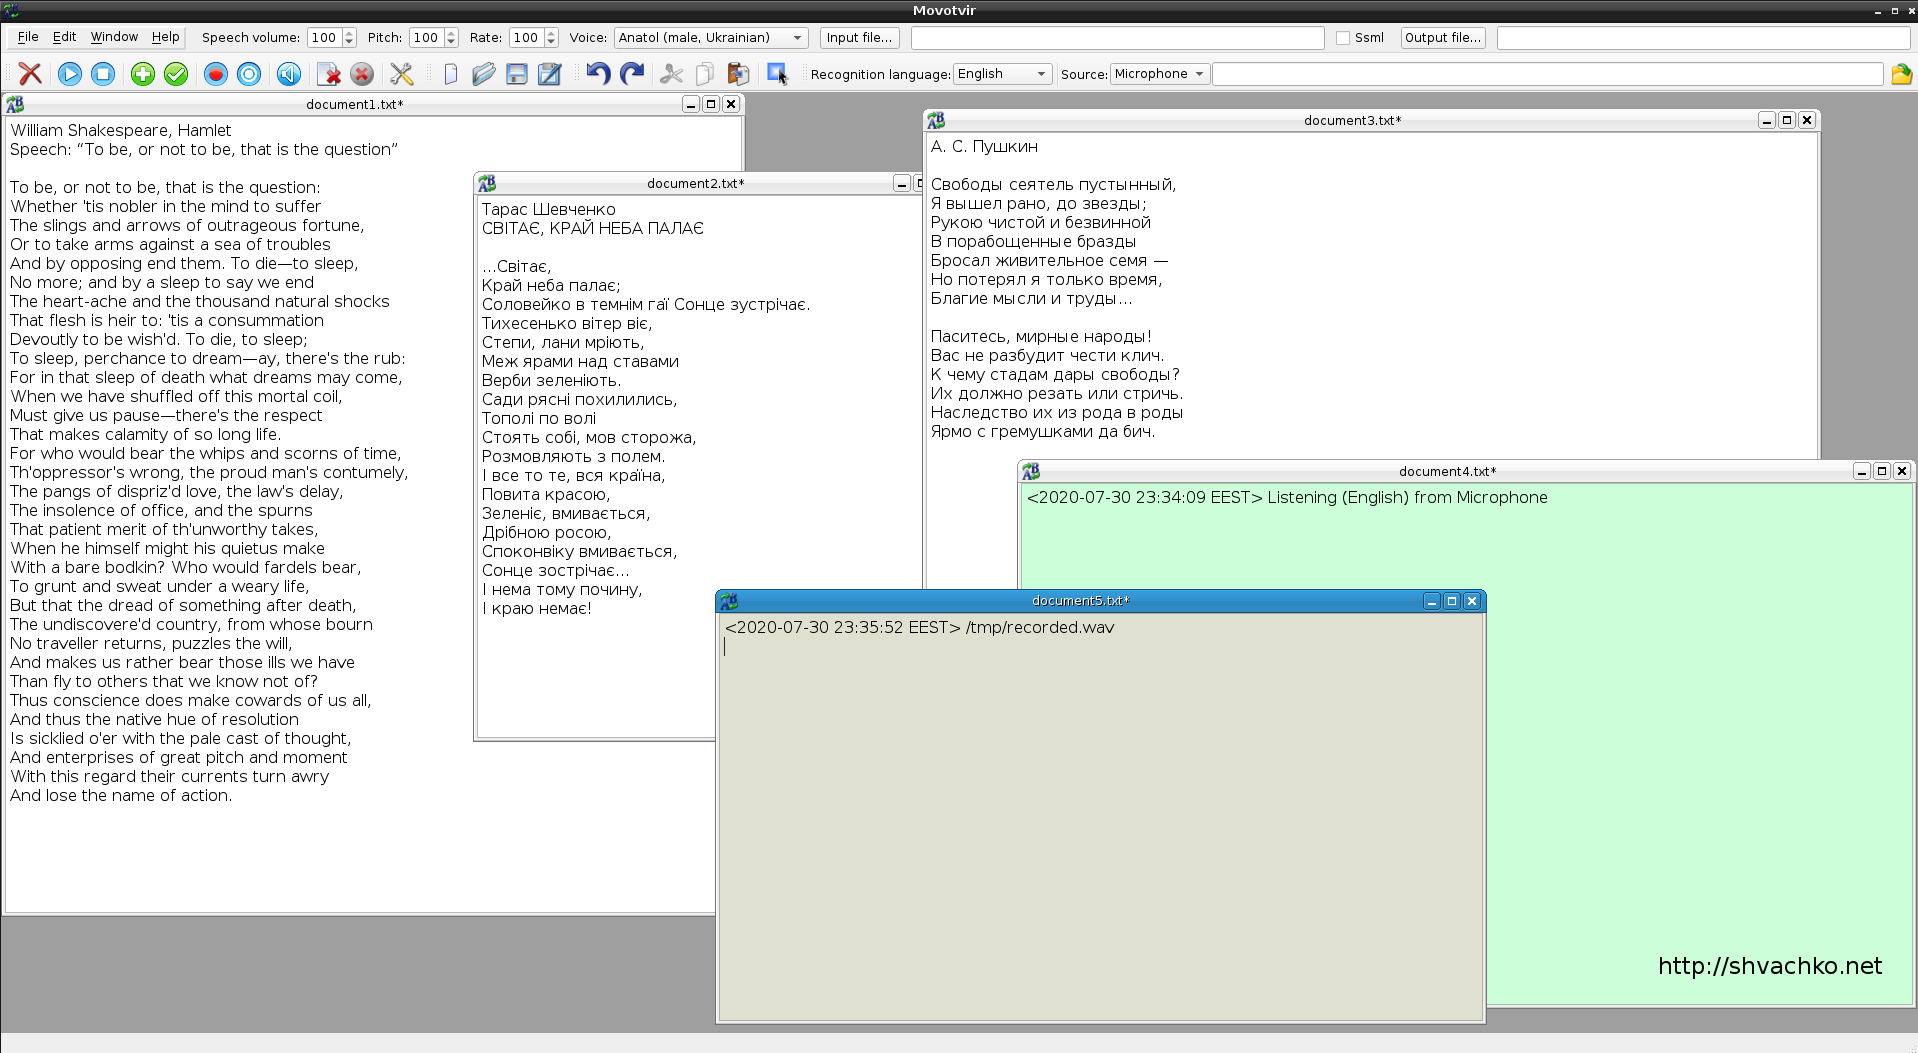 Копія екрану програмного модуля блока обробки мови та аудіо інформаційного робота-асистента «Семаргл»